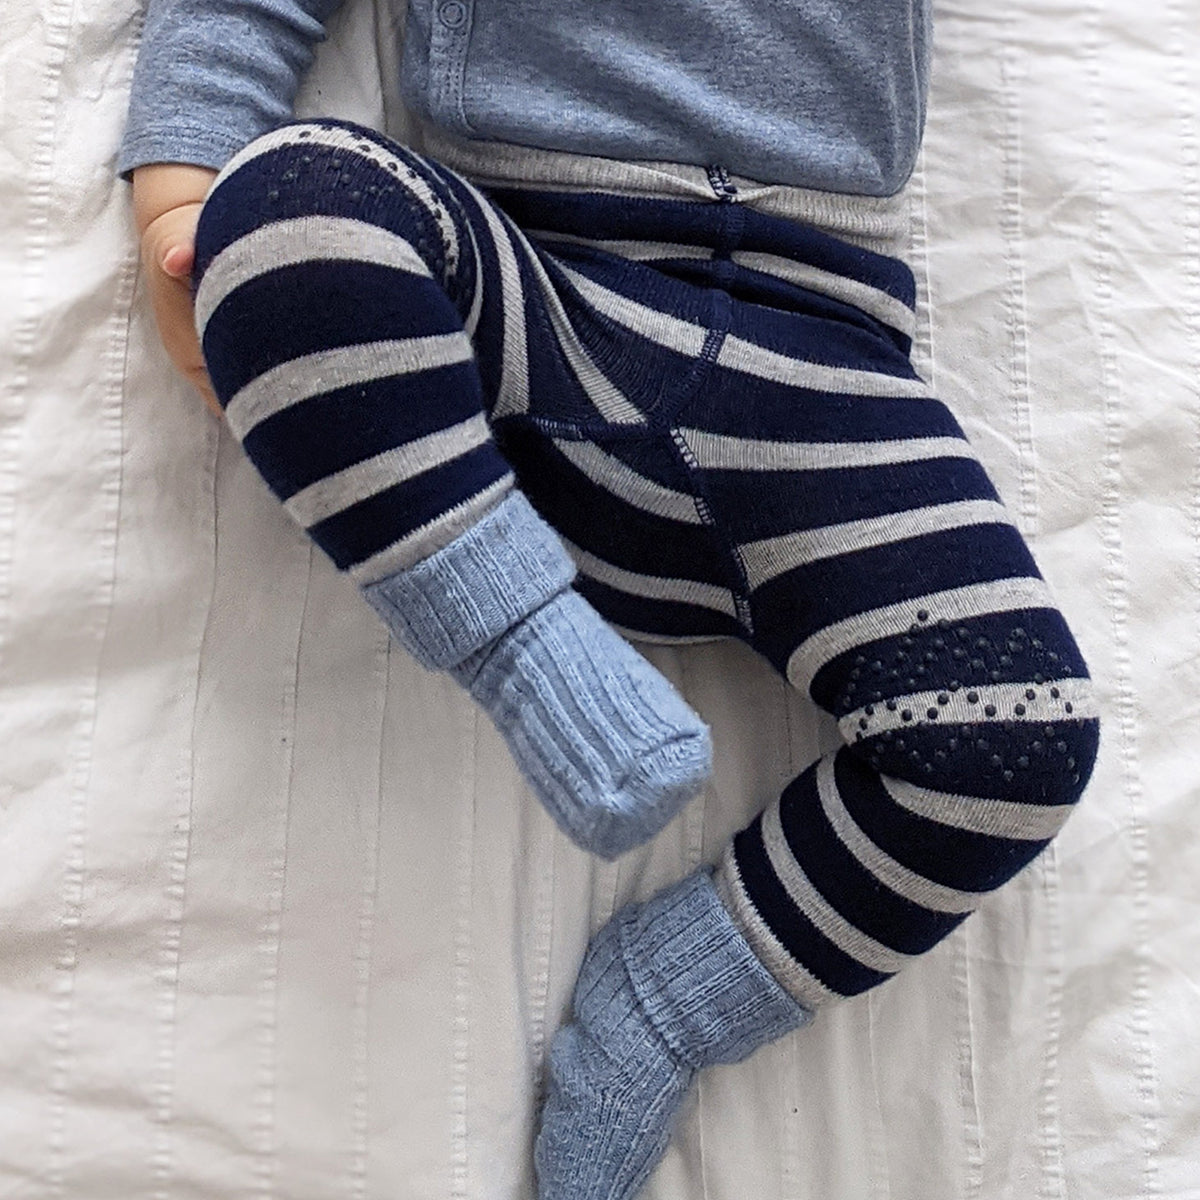 Newborn Stay-on Bootie Bundle - Booties + Leggings + Stay-on Socks - Navy